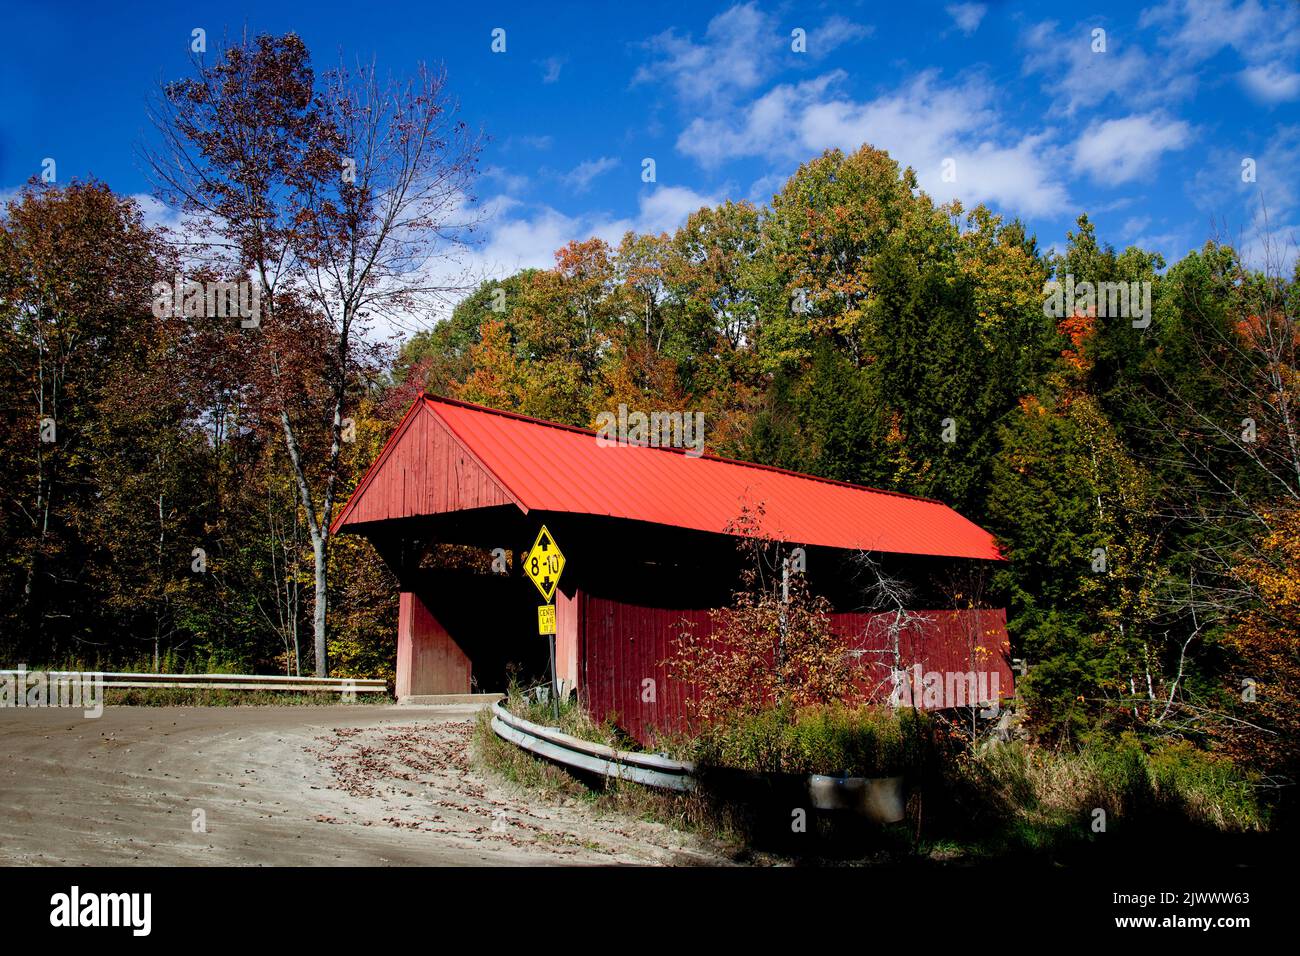 Puente cubierto encontrado en una carretera rural cerca de Stowe, Vermont, EE.UU. En un hermoso día de otoño Foto de stock